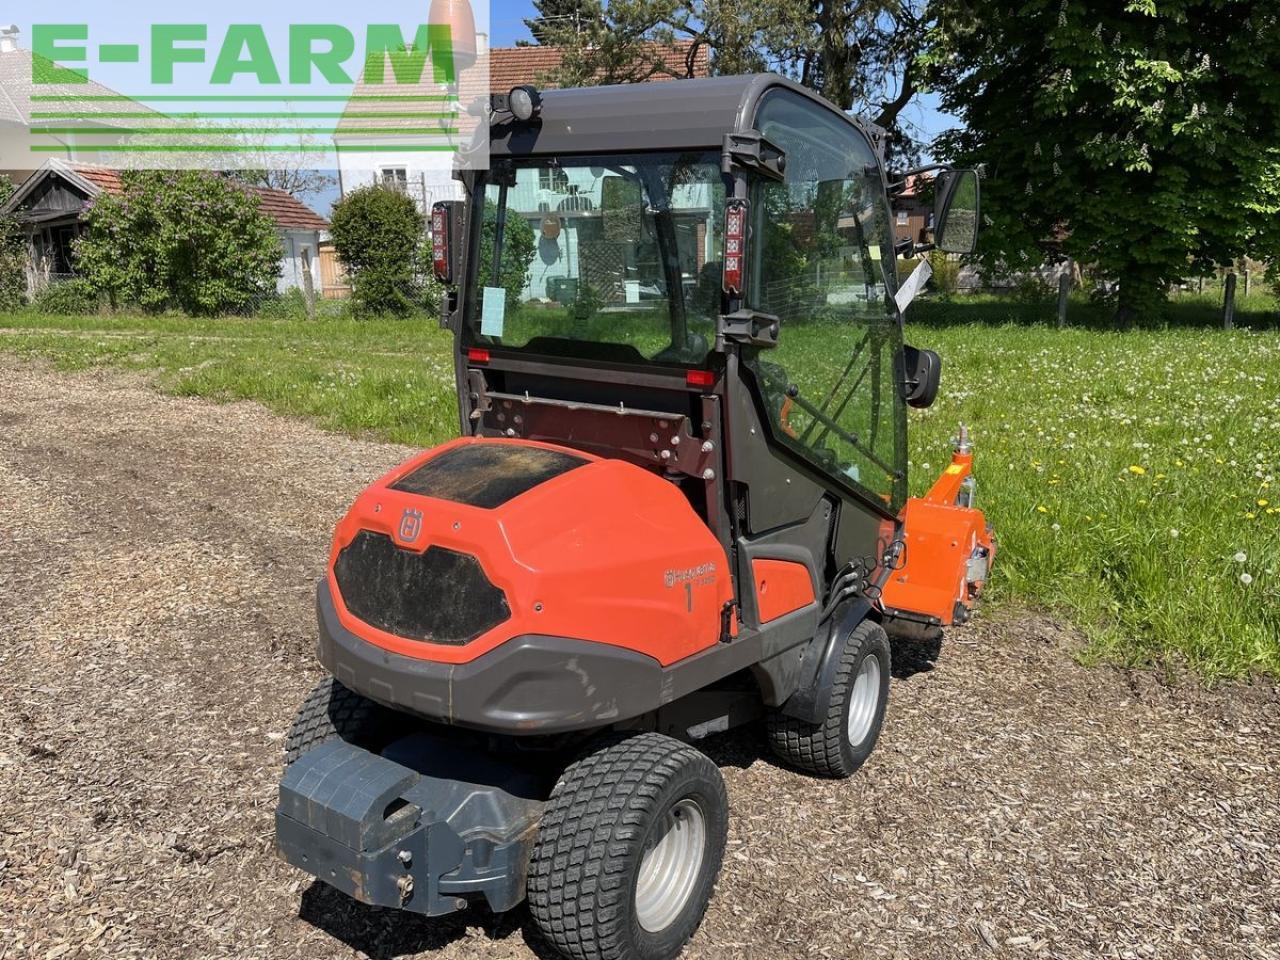 Farm tractor Husqvarna p525 d mit kabine und schleglmäher: picture 6